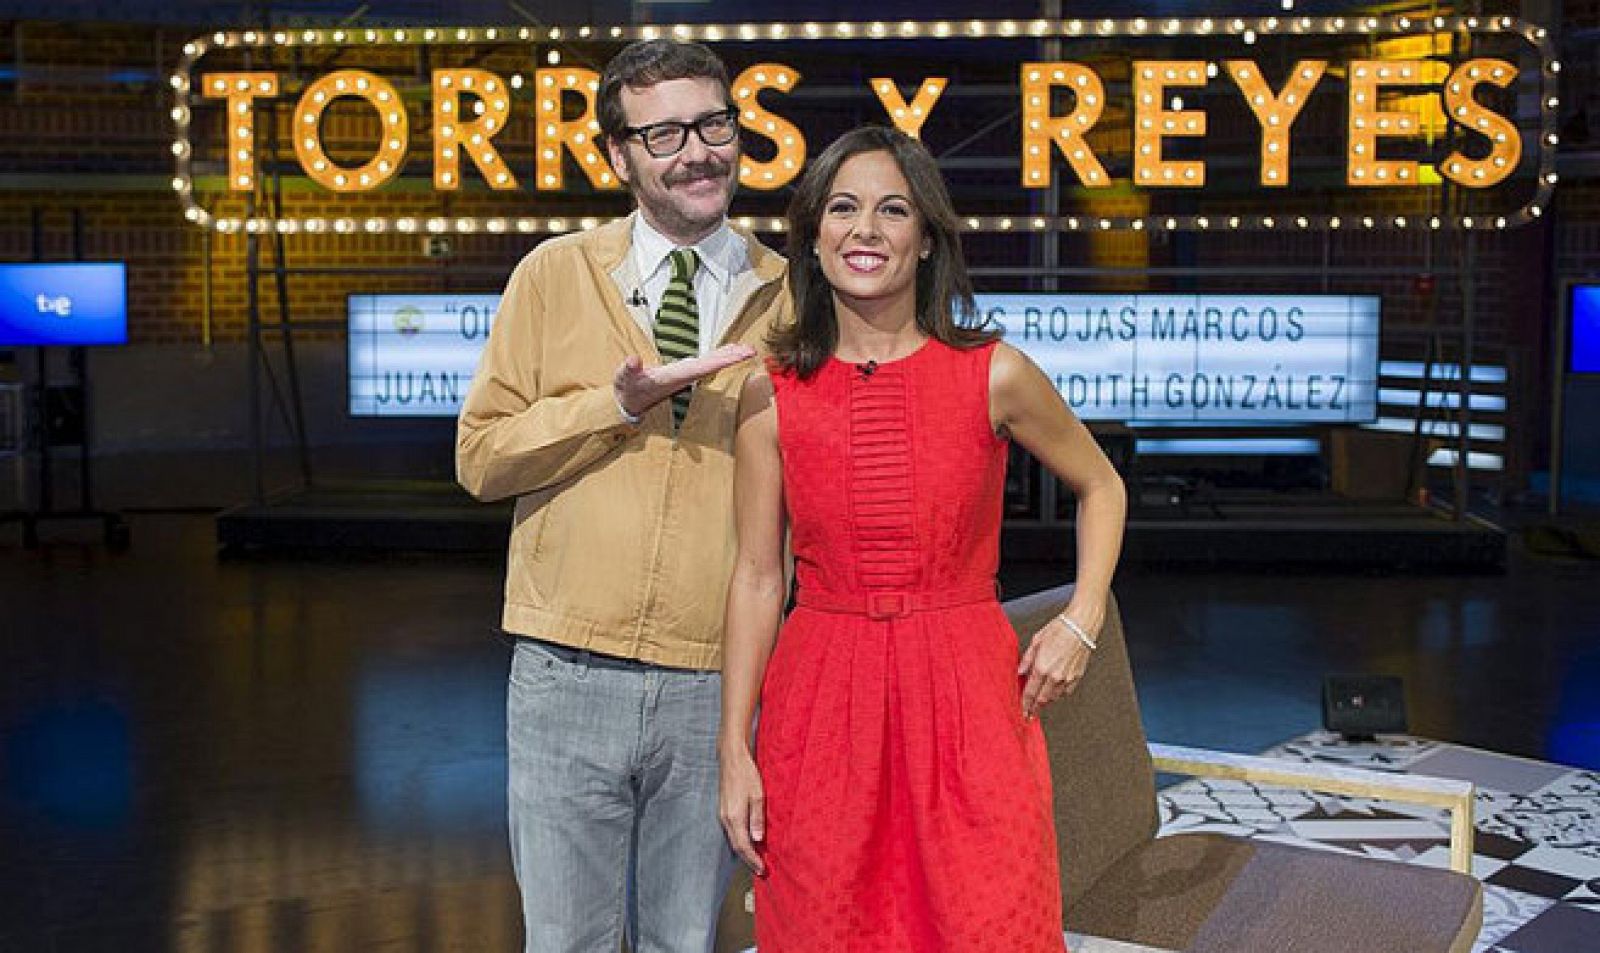 Joaquín Reyes y Mara Torres, presentadores de 'Torres y Reyes' estarán en interQué 2013.